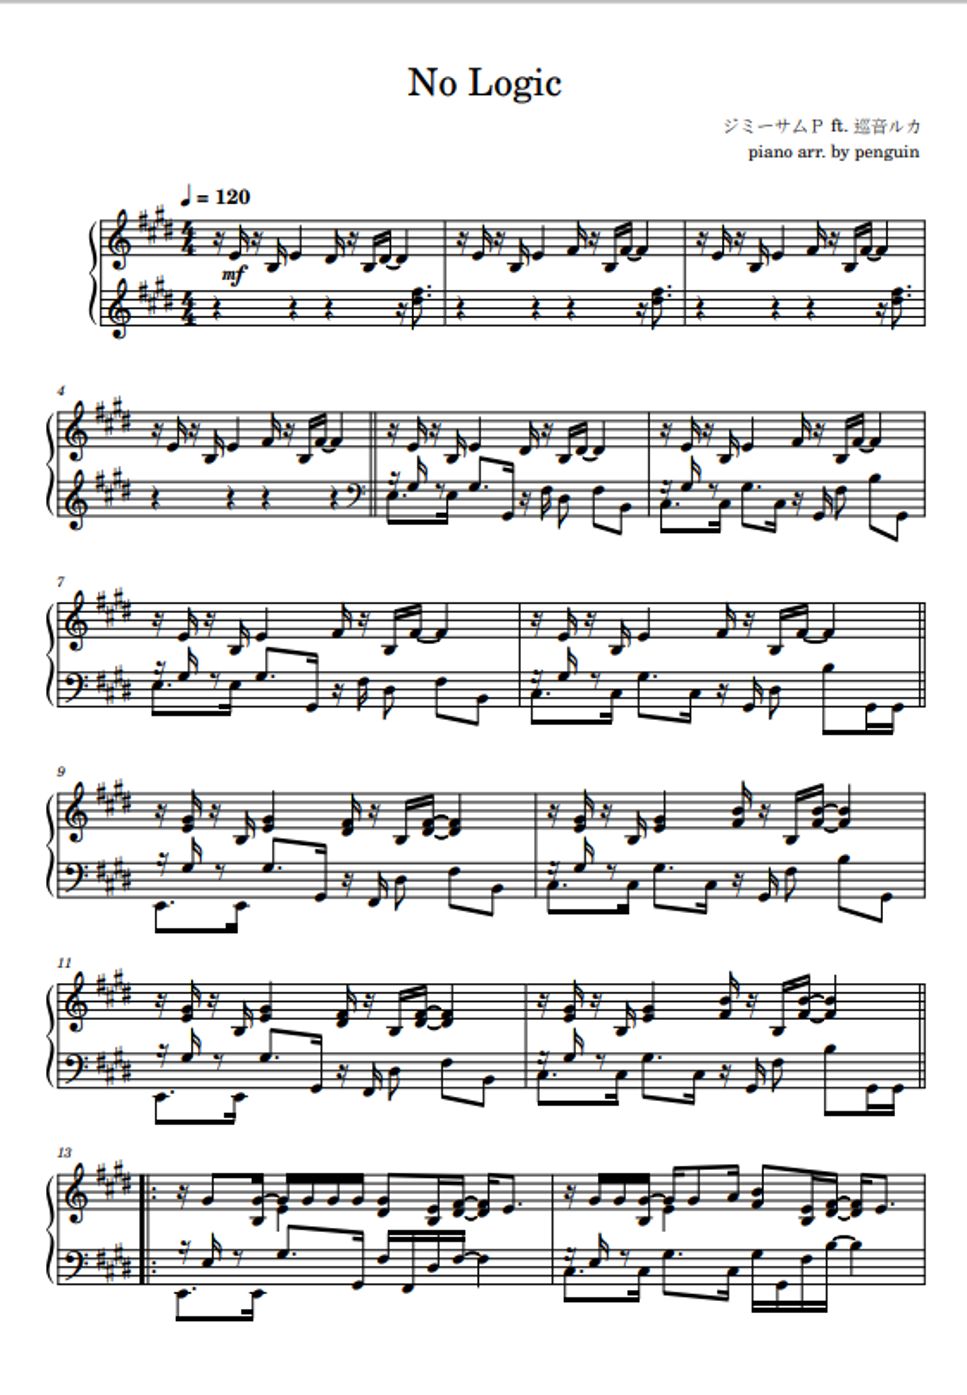 JimmyThumb-P - No Logic by penguin's piano